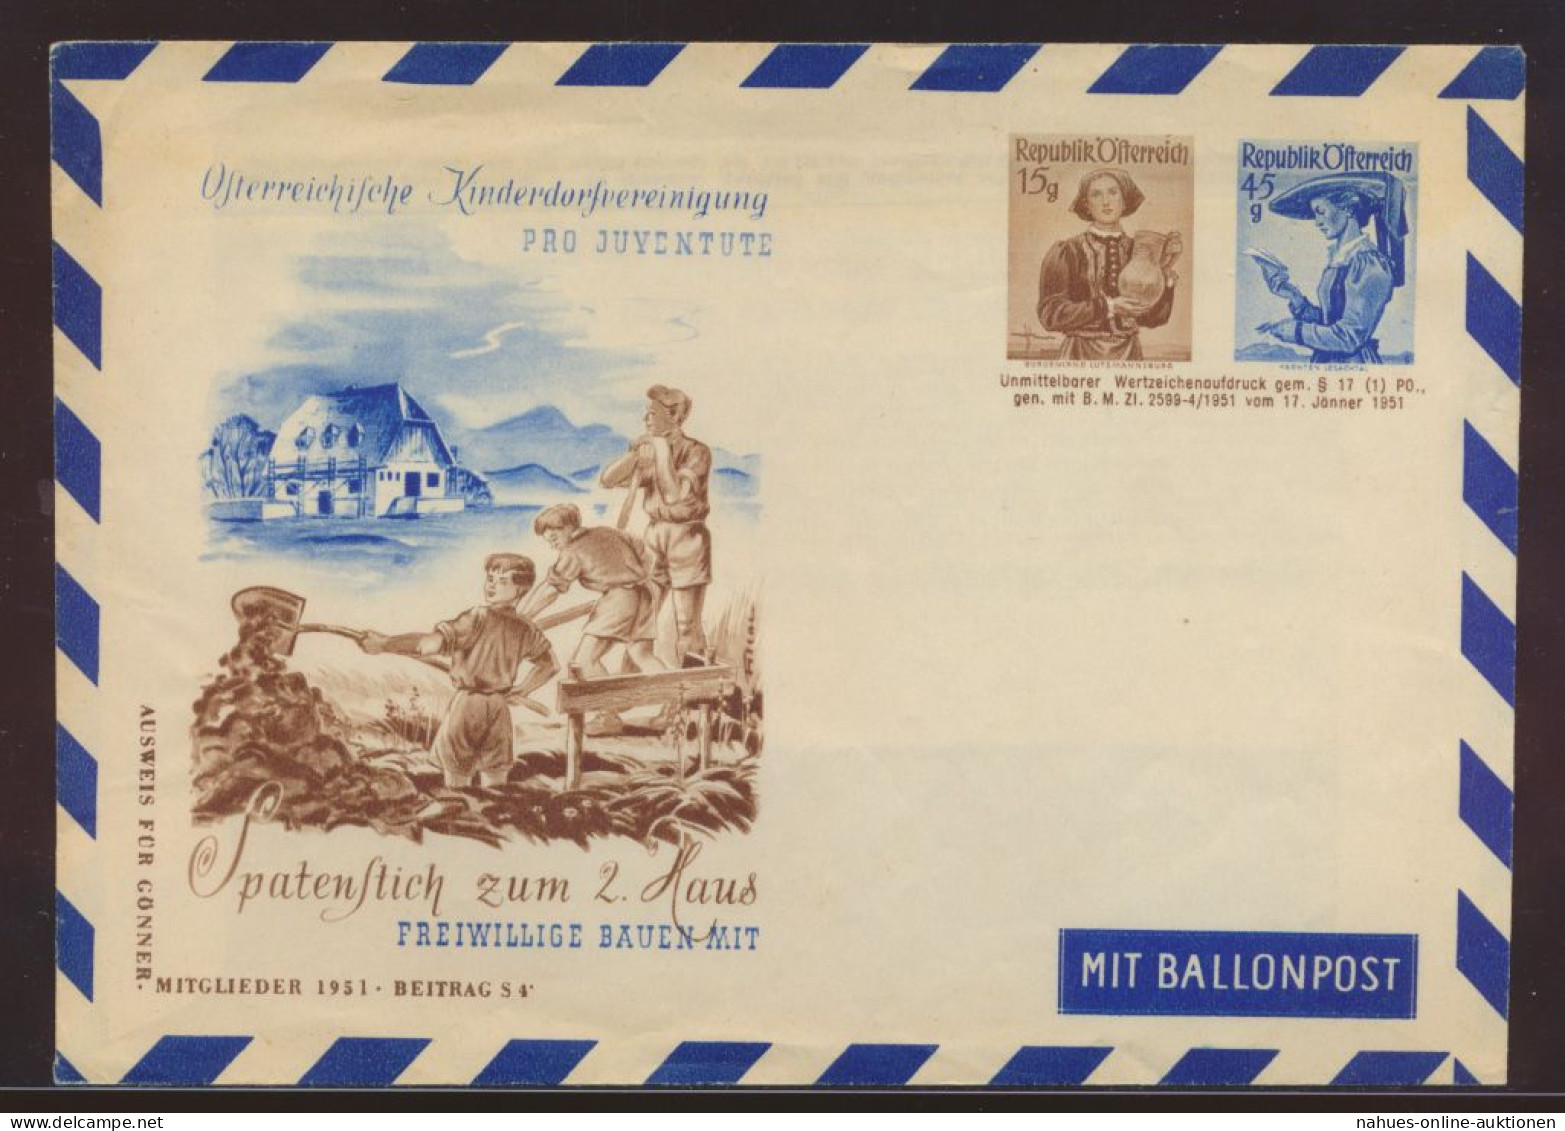 Flugpost Airmail Ballonpost Balloon Post Österreich 15+45g Privatganzsache - Zeppelins